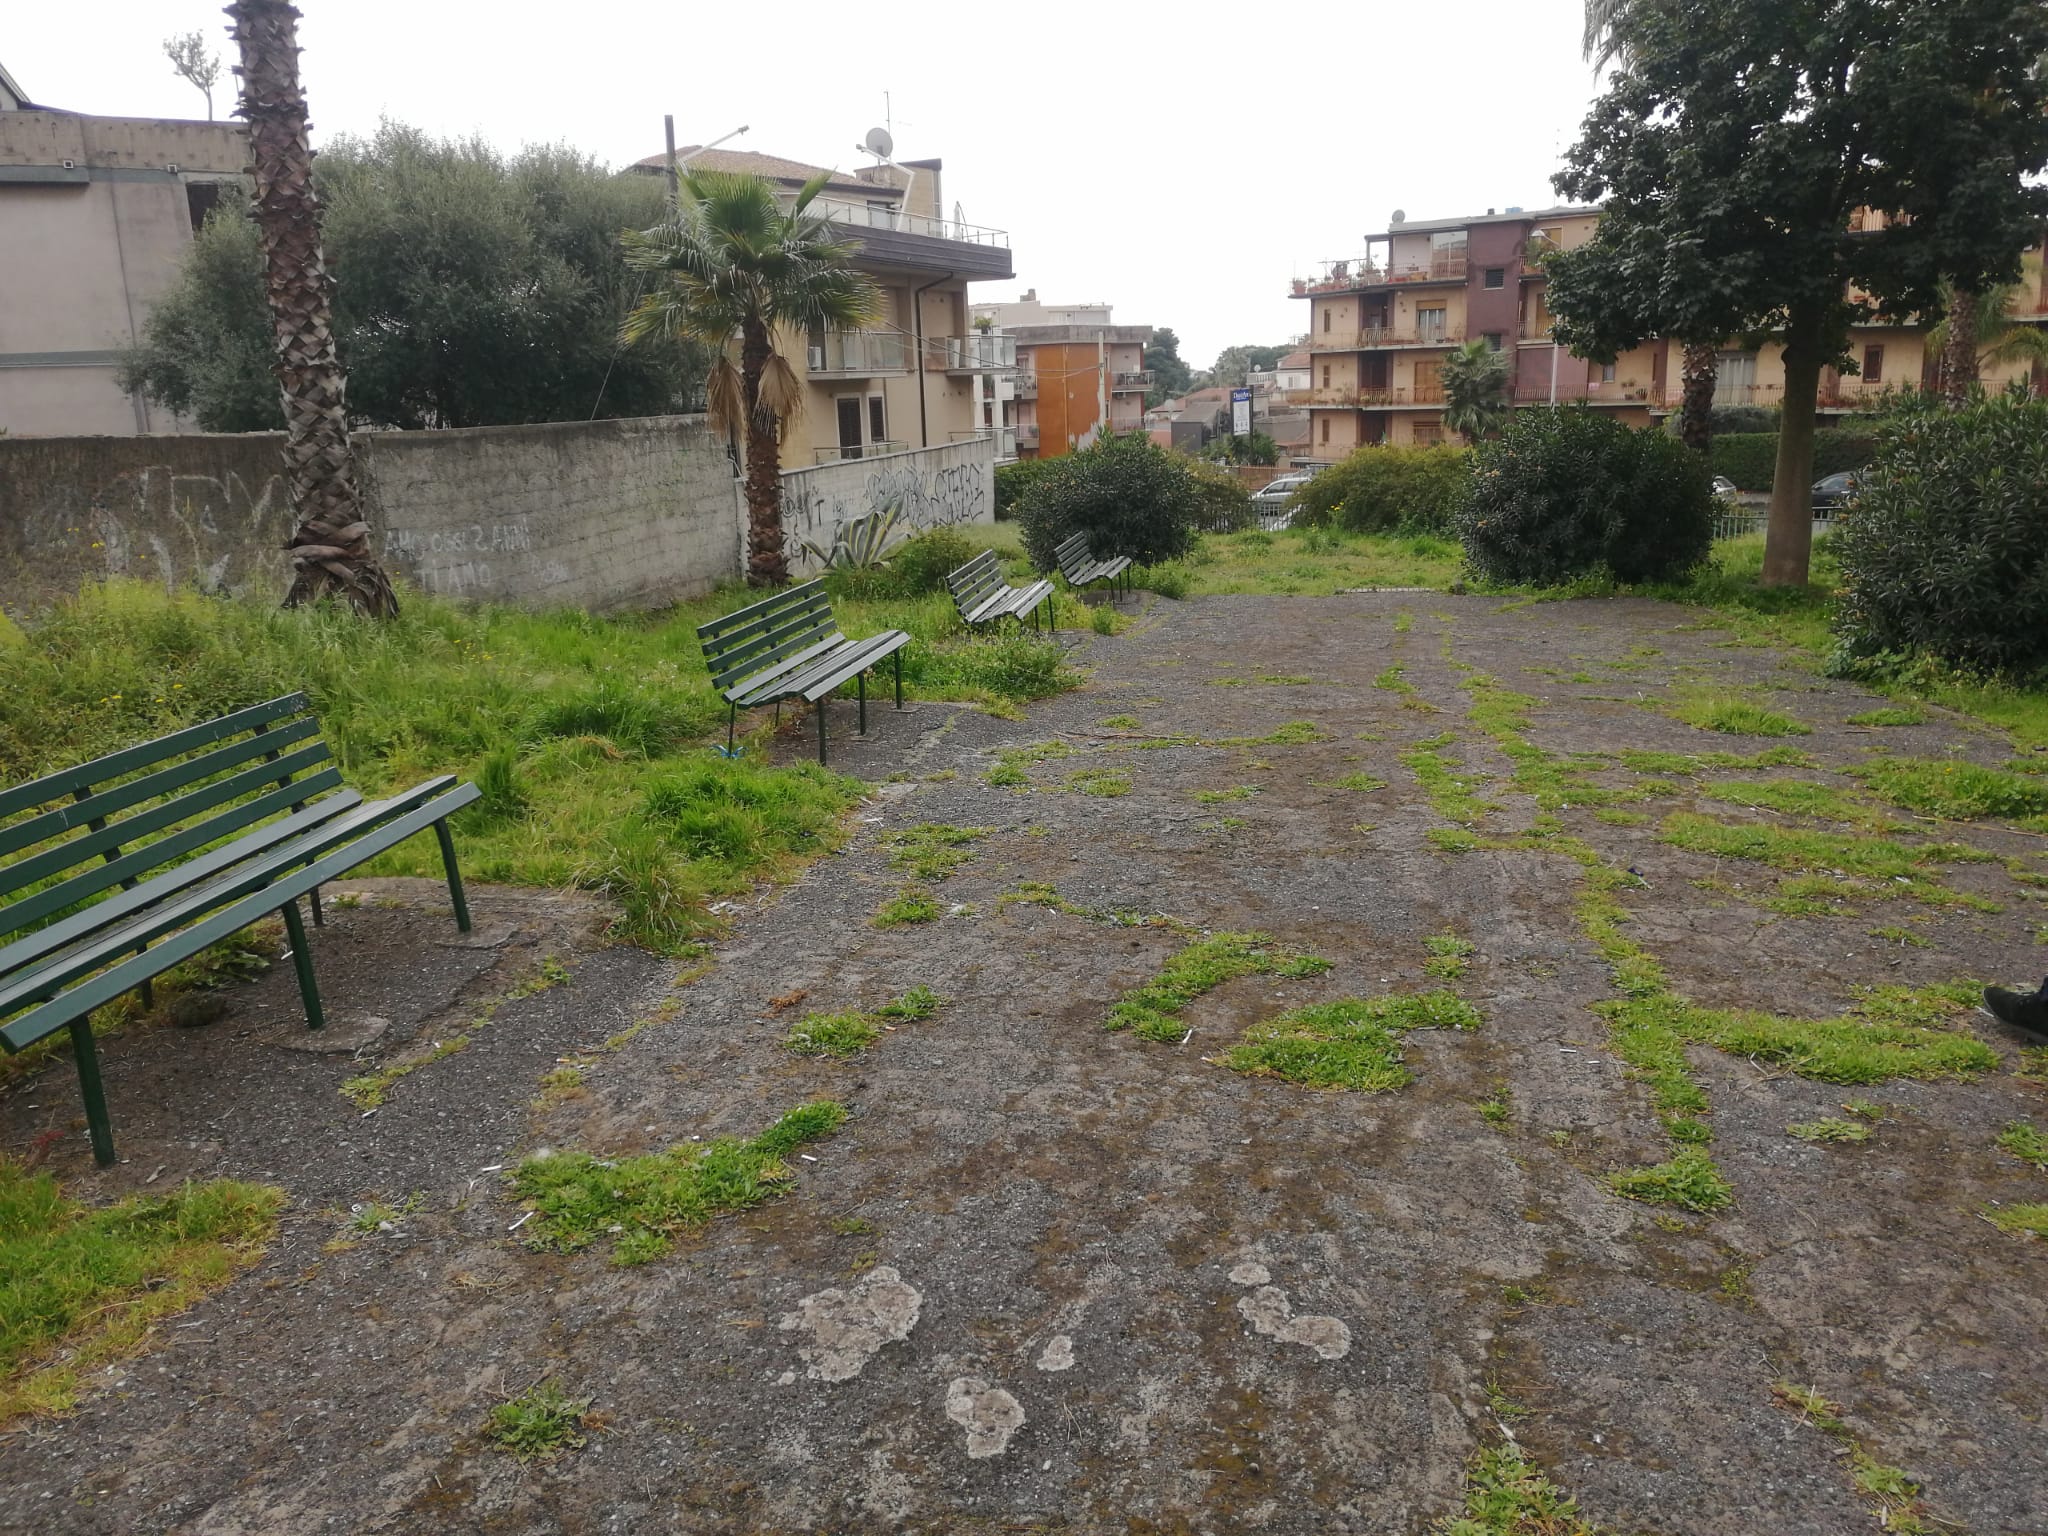 Catania, nel II Municipio c’è carenza di bambinopoli: le segnalazioni del consigliere Cardello